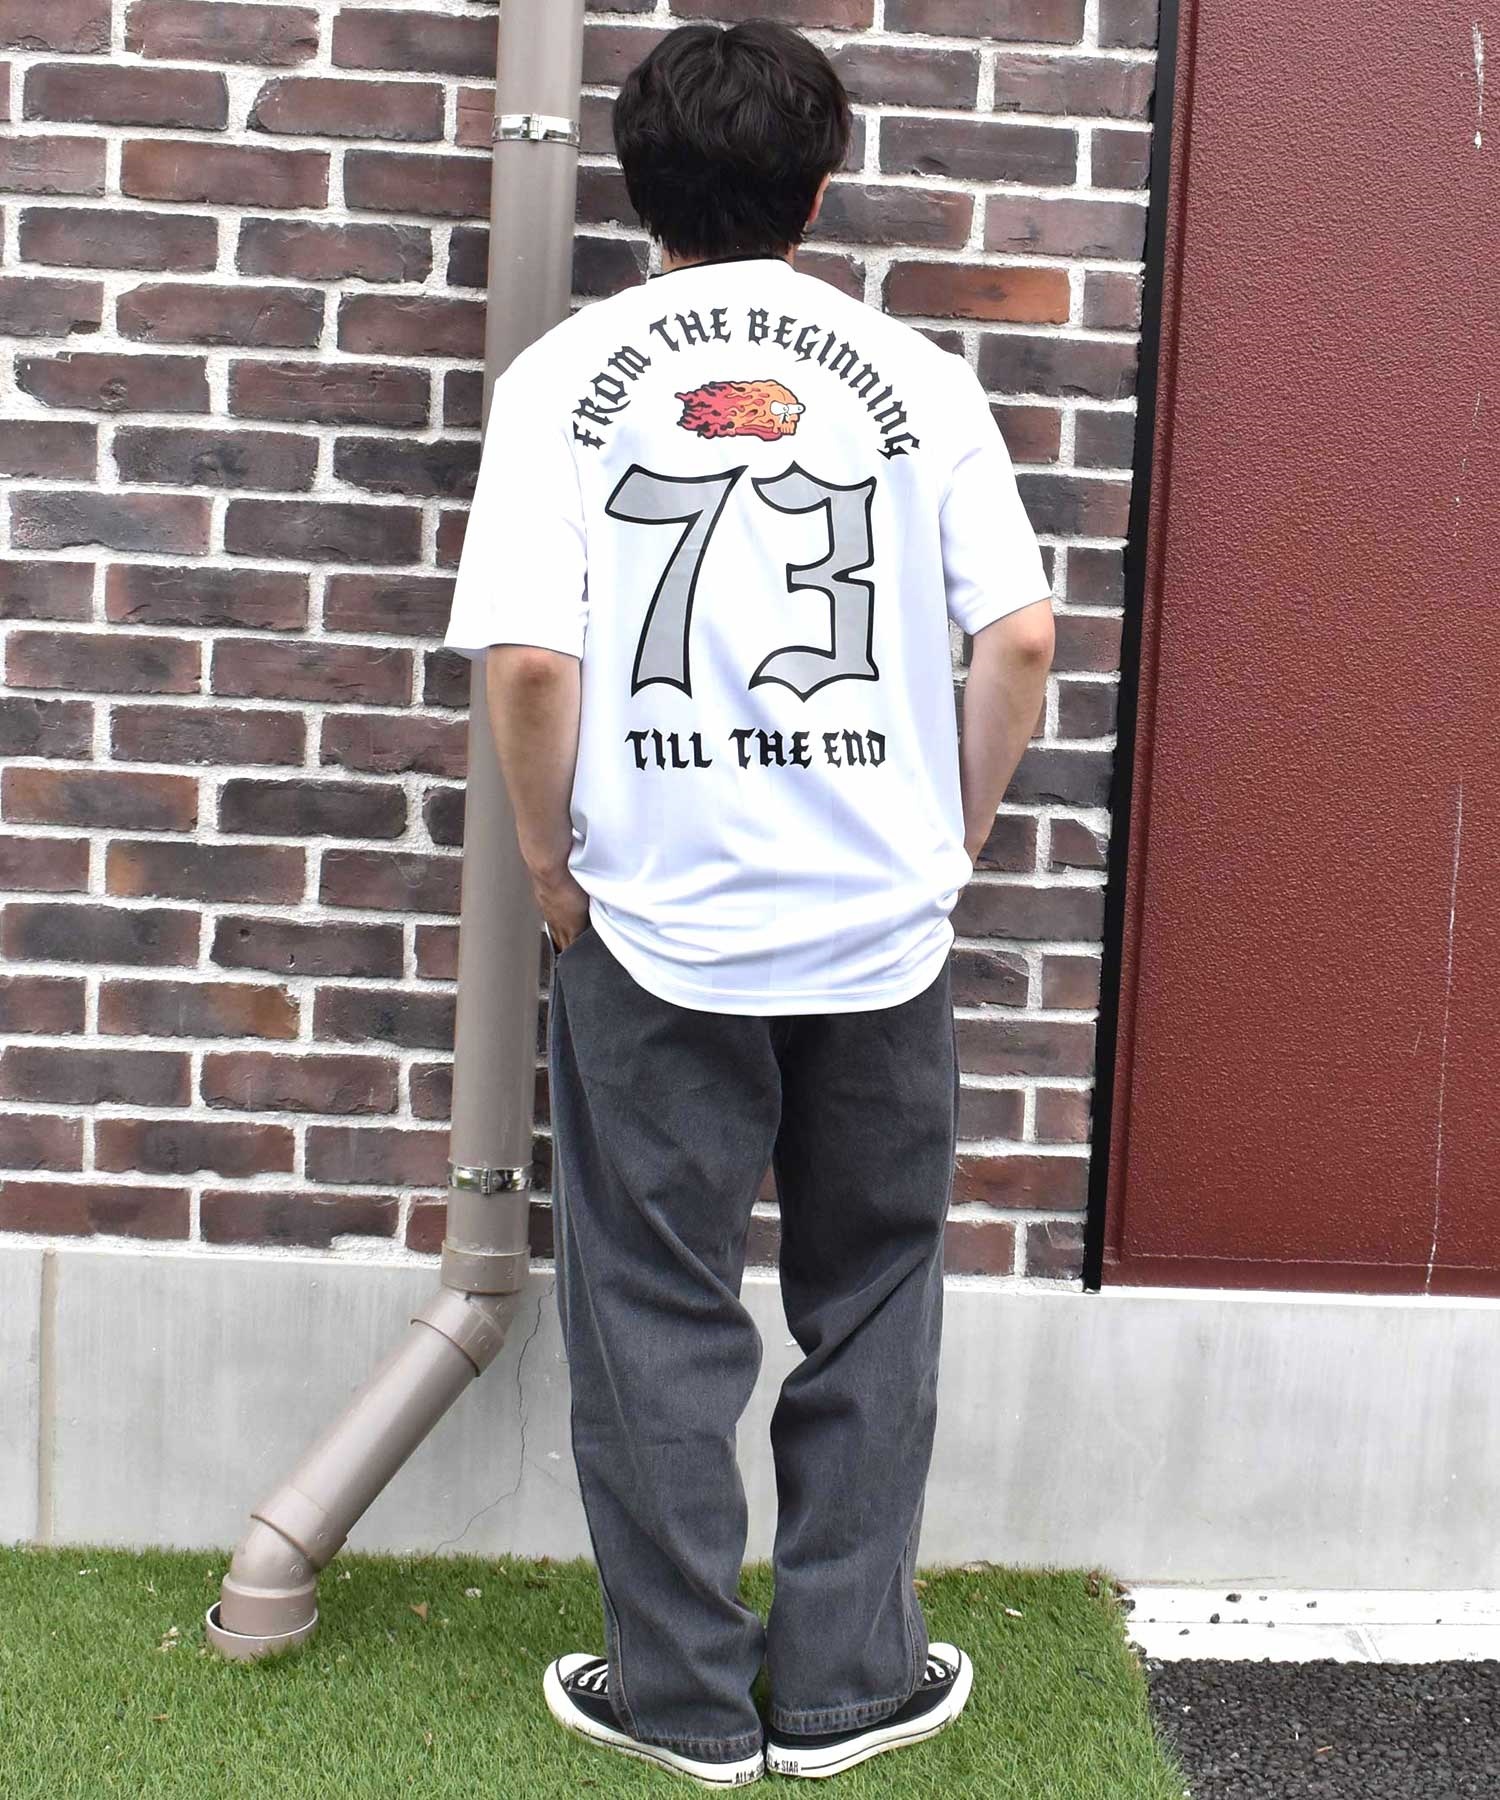 SANTA CRUZ サンタクルーズ メンズ トップス カットソー 半袖 Tシャツ 502242401(WHITE-M)